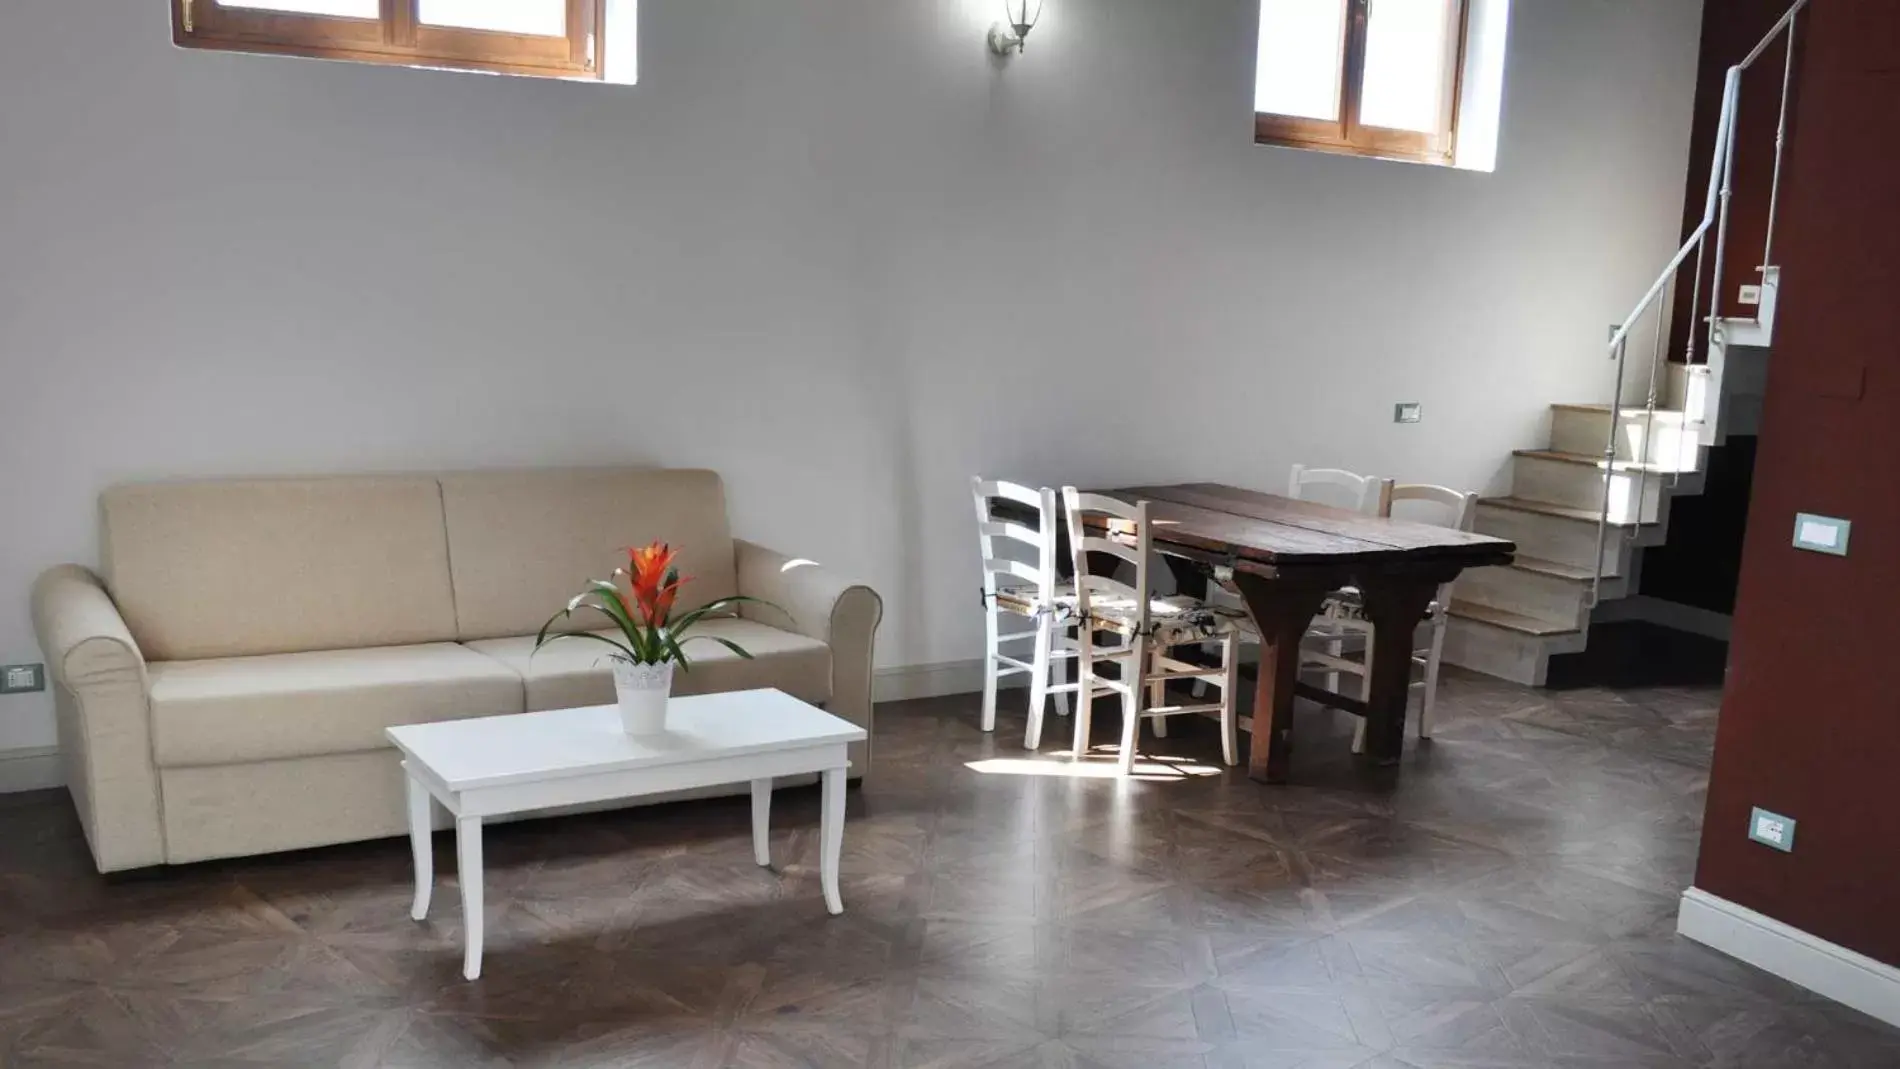 Photo of the whole room, Dining Area in Armonie di Villa Incontri B&B